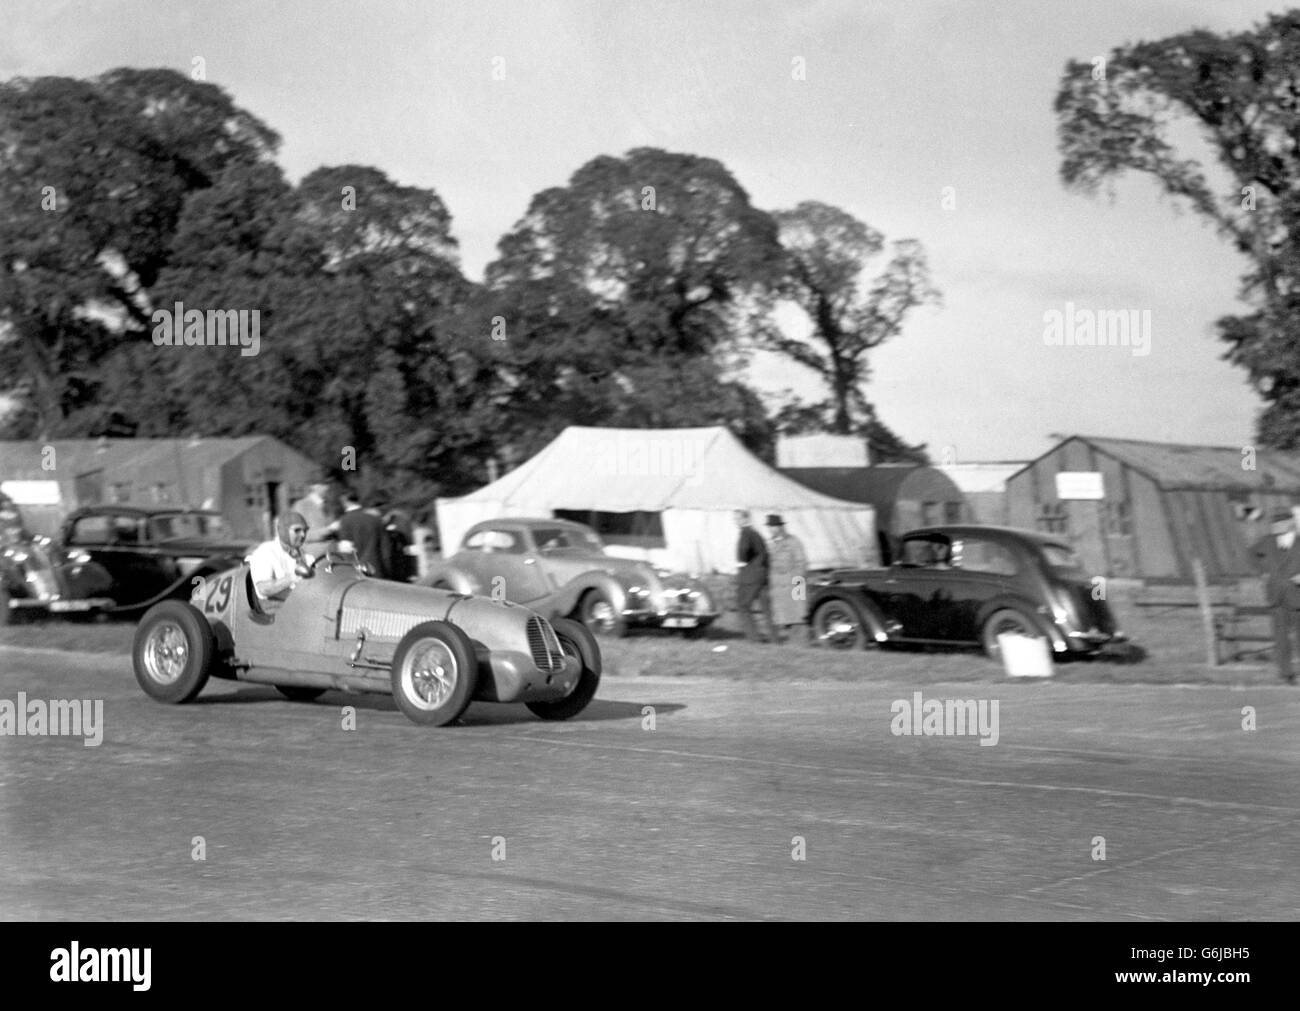 Motor Racing - glorieux Goodwood.Duncan Hamilton, pilote de course britannique, dans son Maserati à Goodwood. Banque D'Images